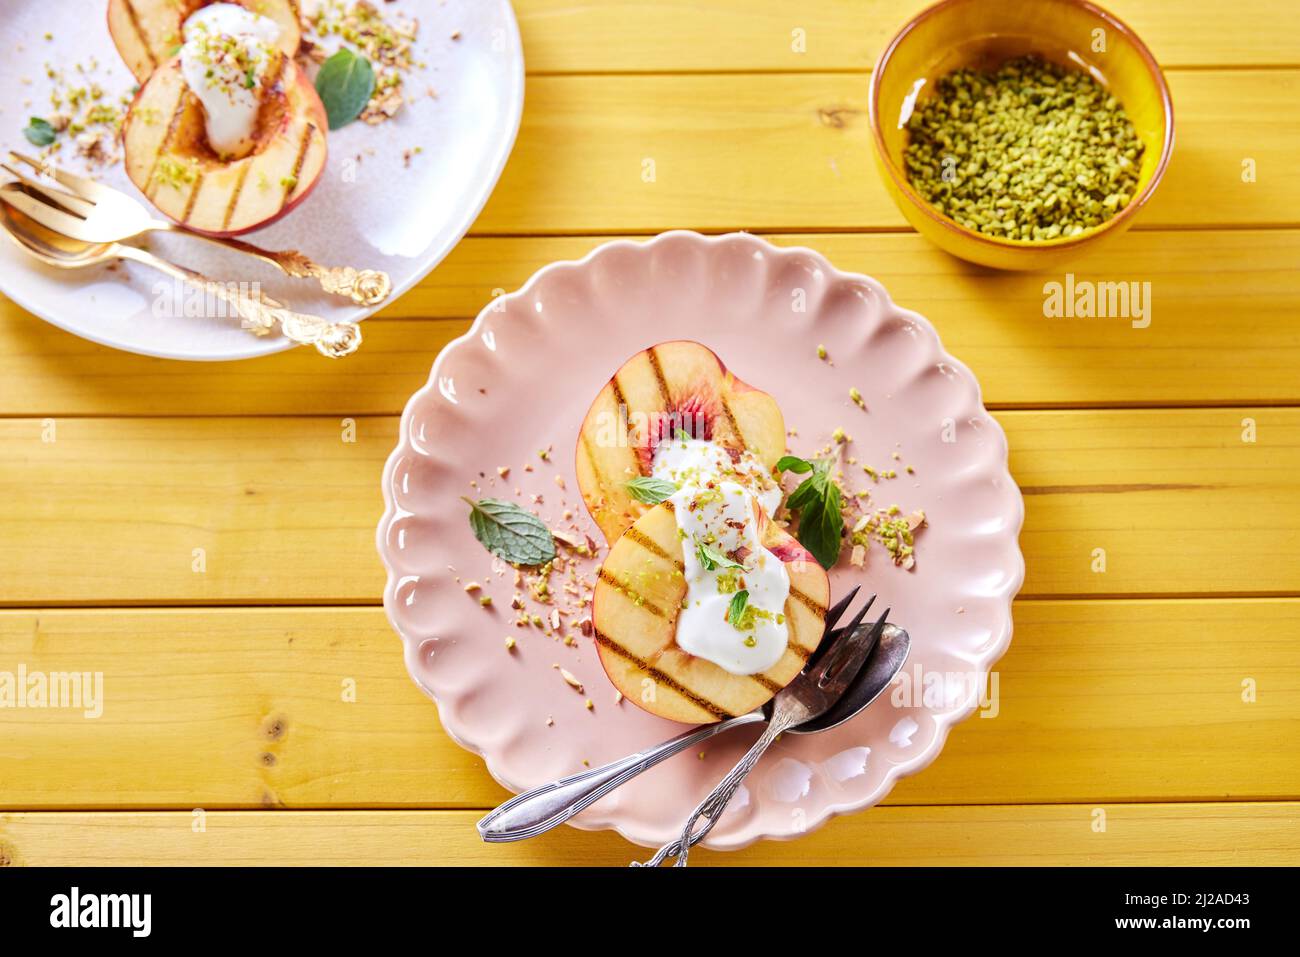 Vista del plato con deliciosas nectarinas dulces con yogur y hojas de menta servidas en mesa de madera con tazón de pistachos Foto de stock